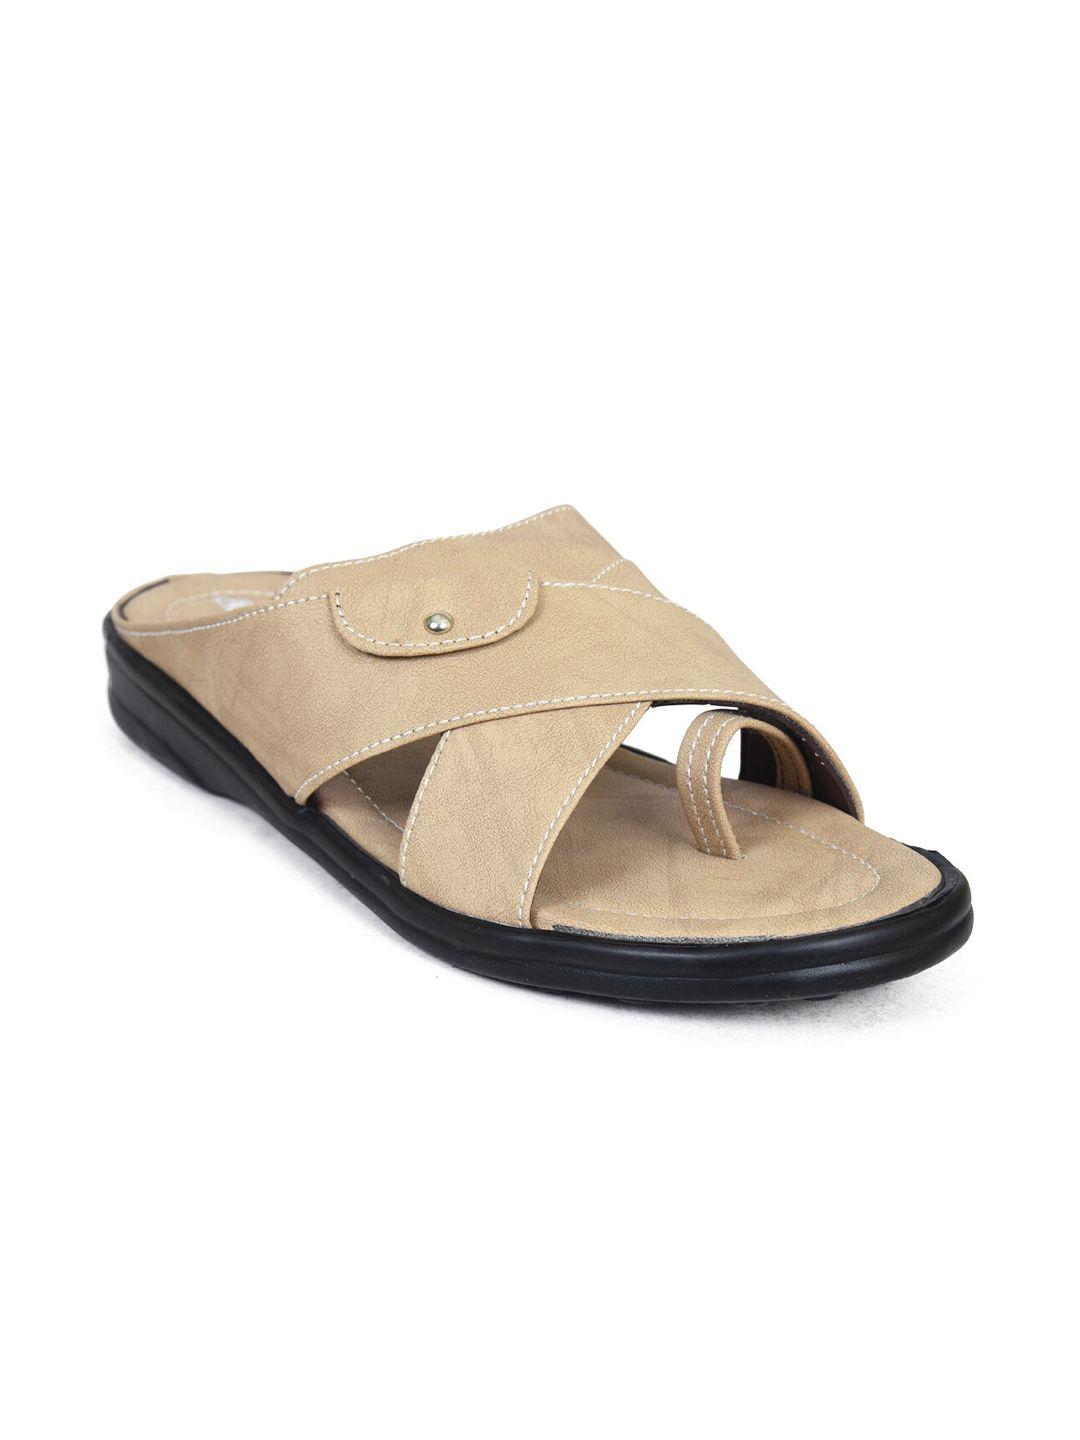 ajanta-men-cream-coloured-comfort-sandals